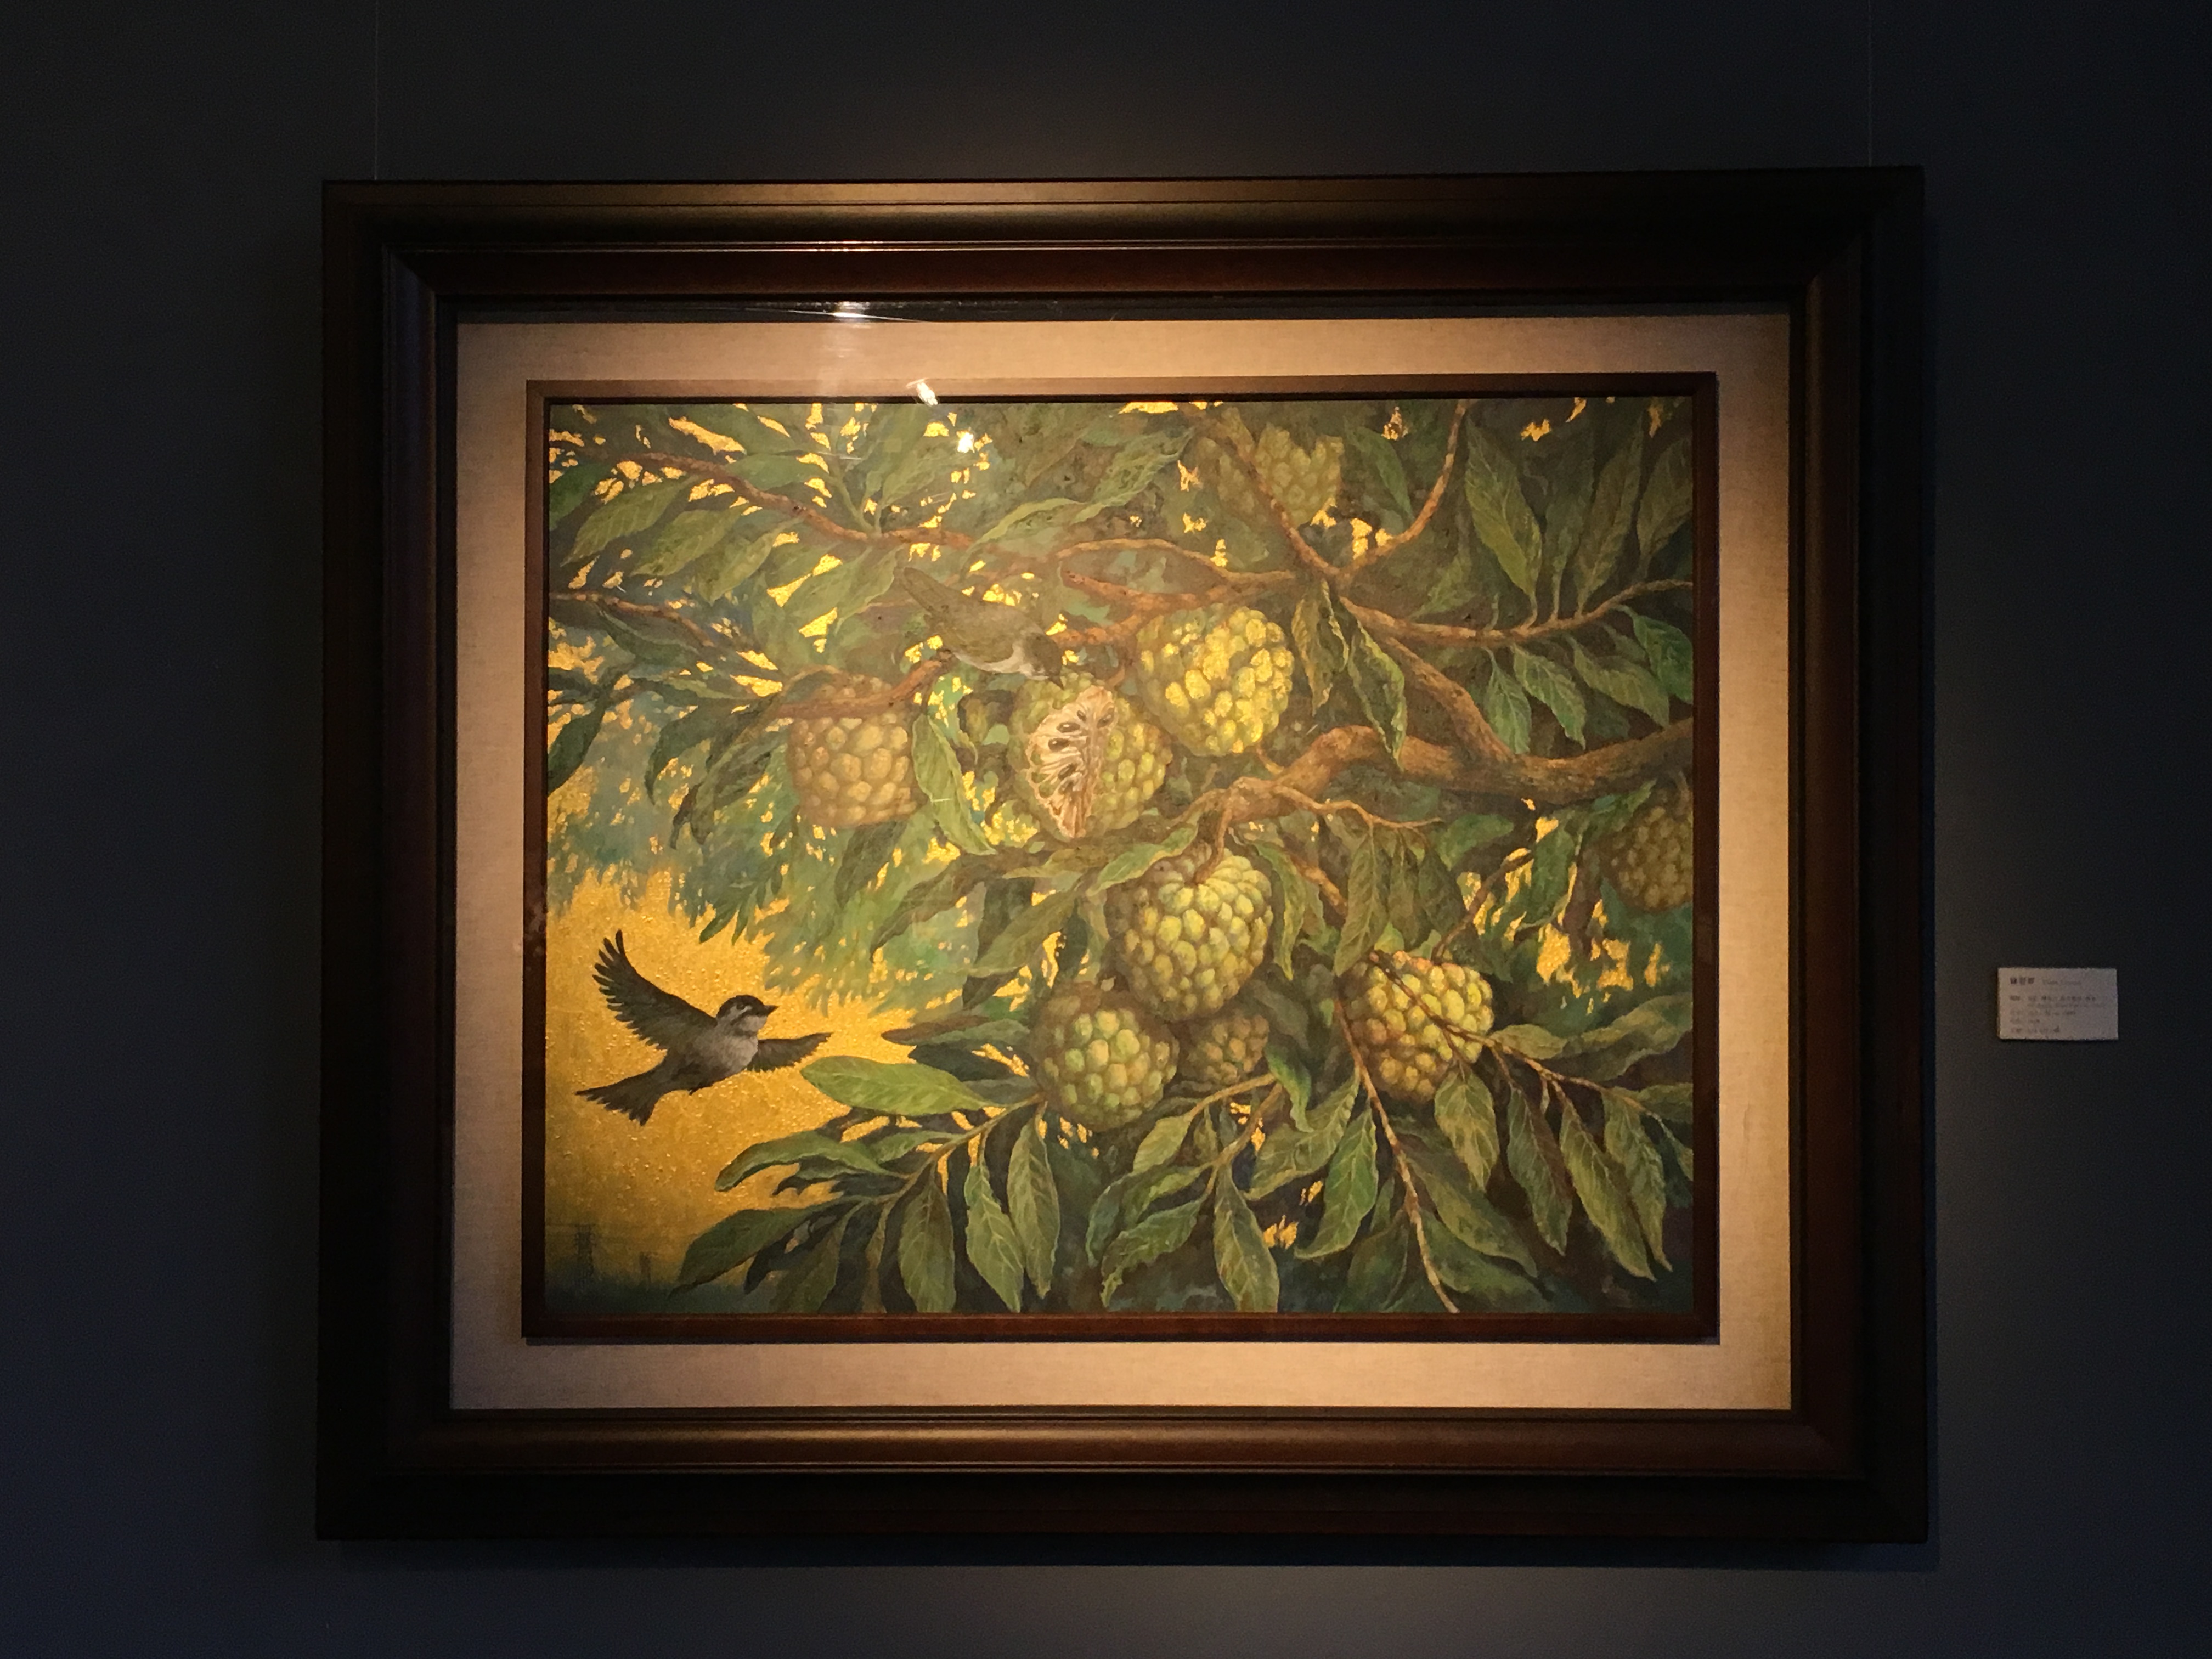 劉子平，《綠翡翠》，72.5 x 91 cm，油彩、壓克力、綜合媒材、畫布，2019。